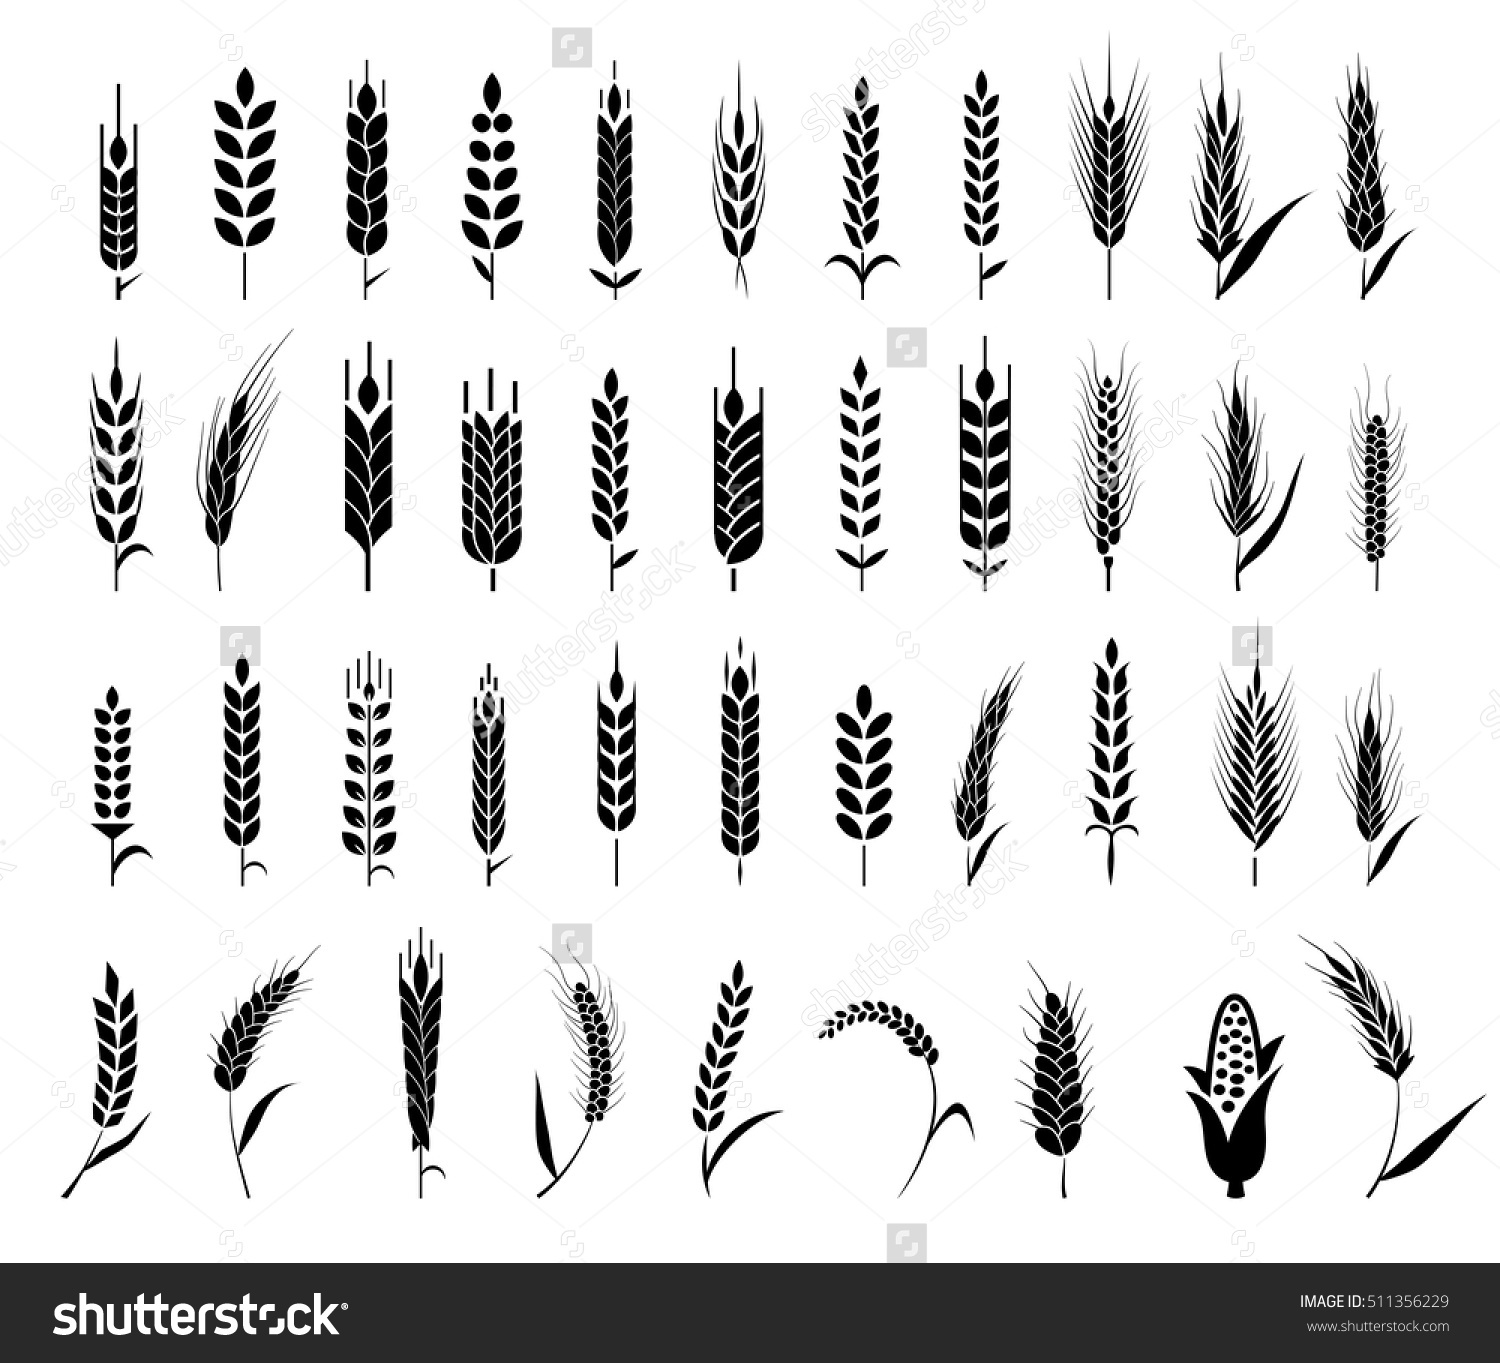 Barley, beer, ear, logo, malt, ribbon, wheat icon | Icon search engine